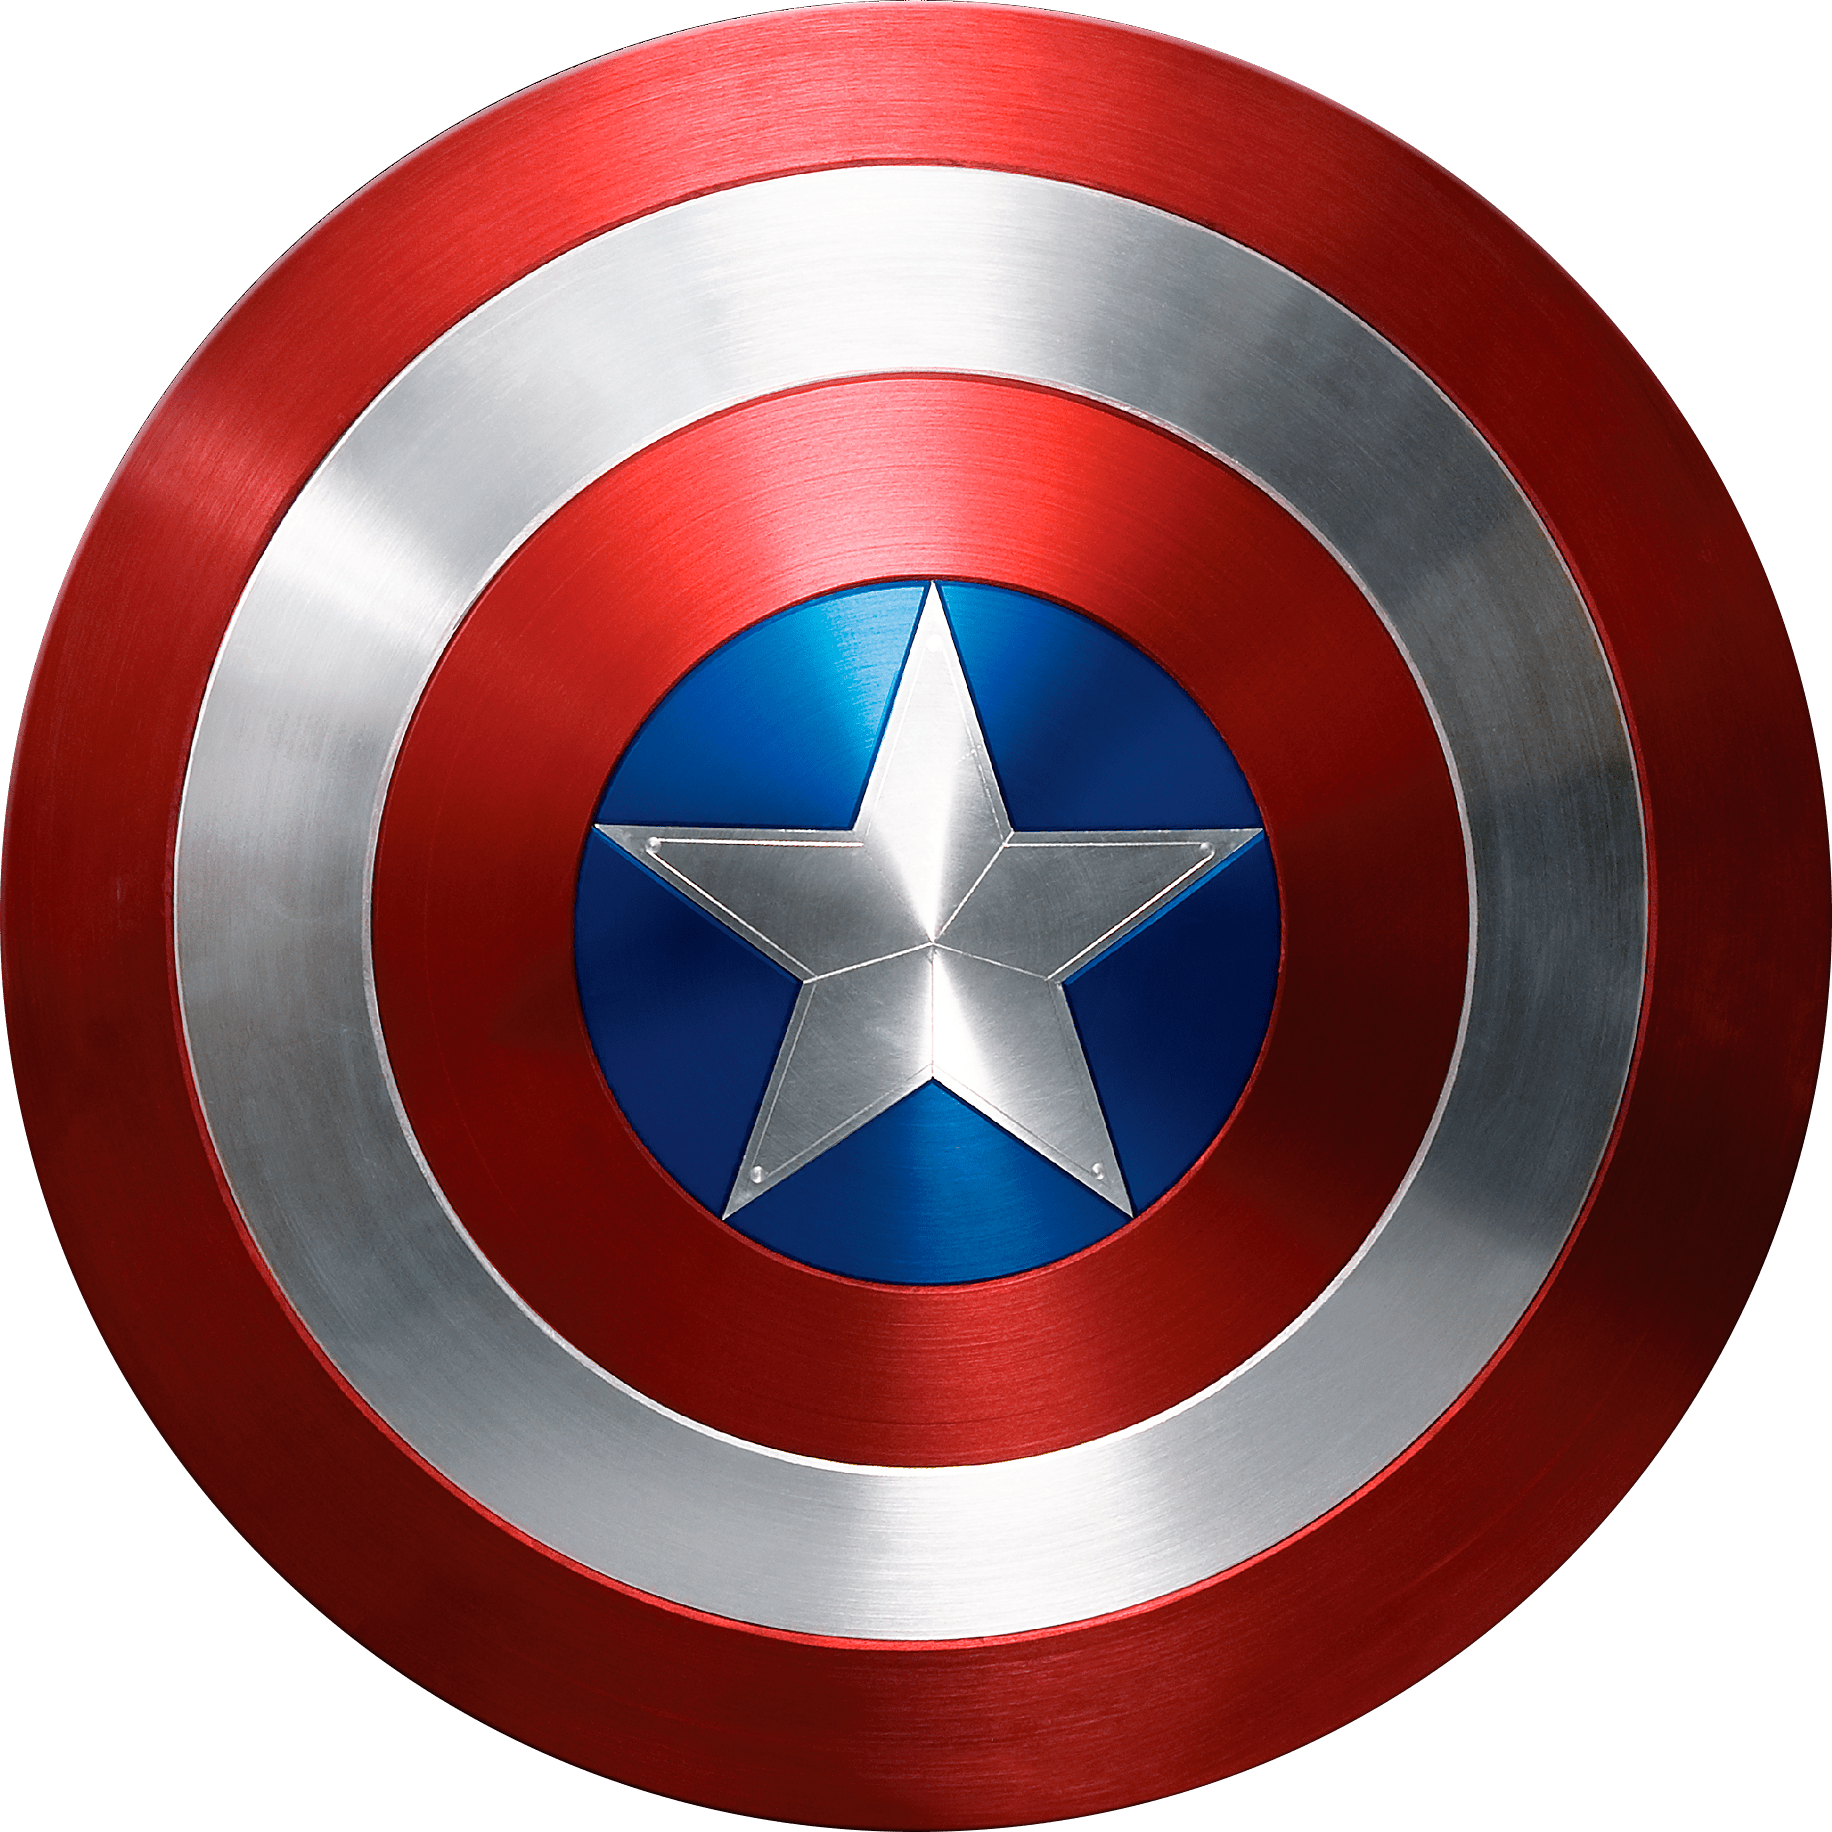 Captain America Photorealistic Shield Captain America Shield